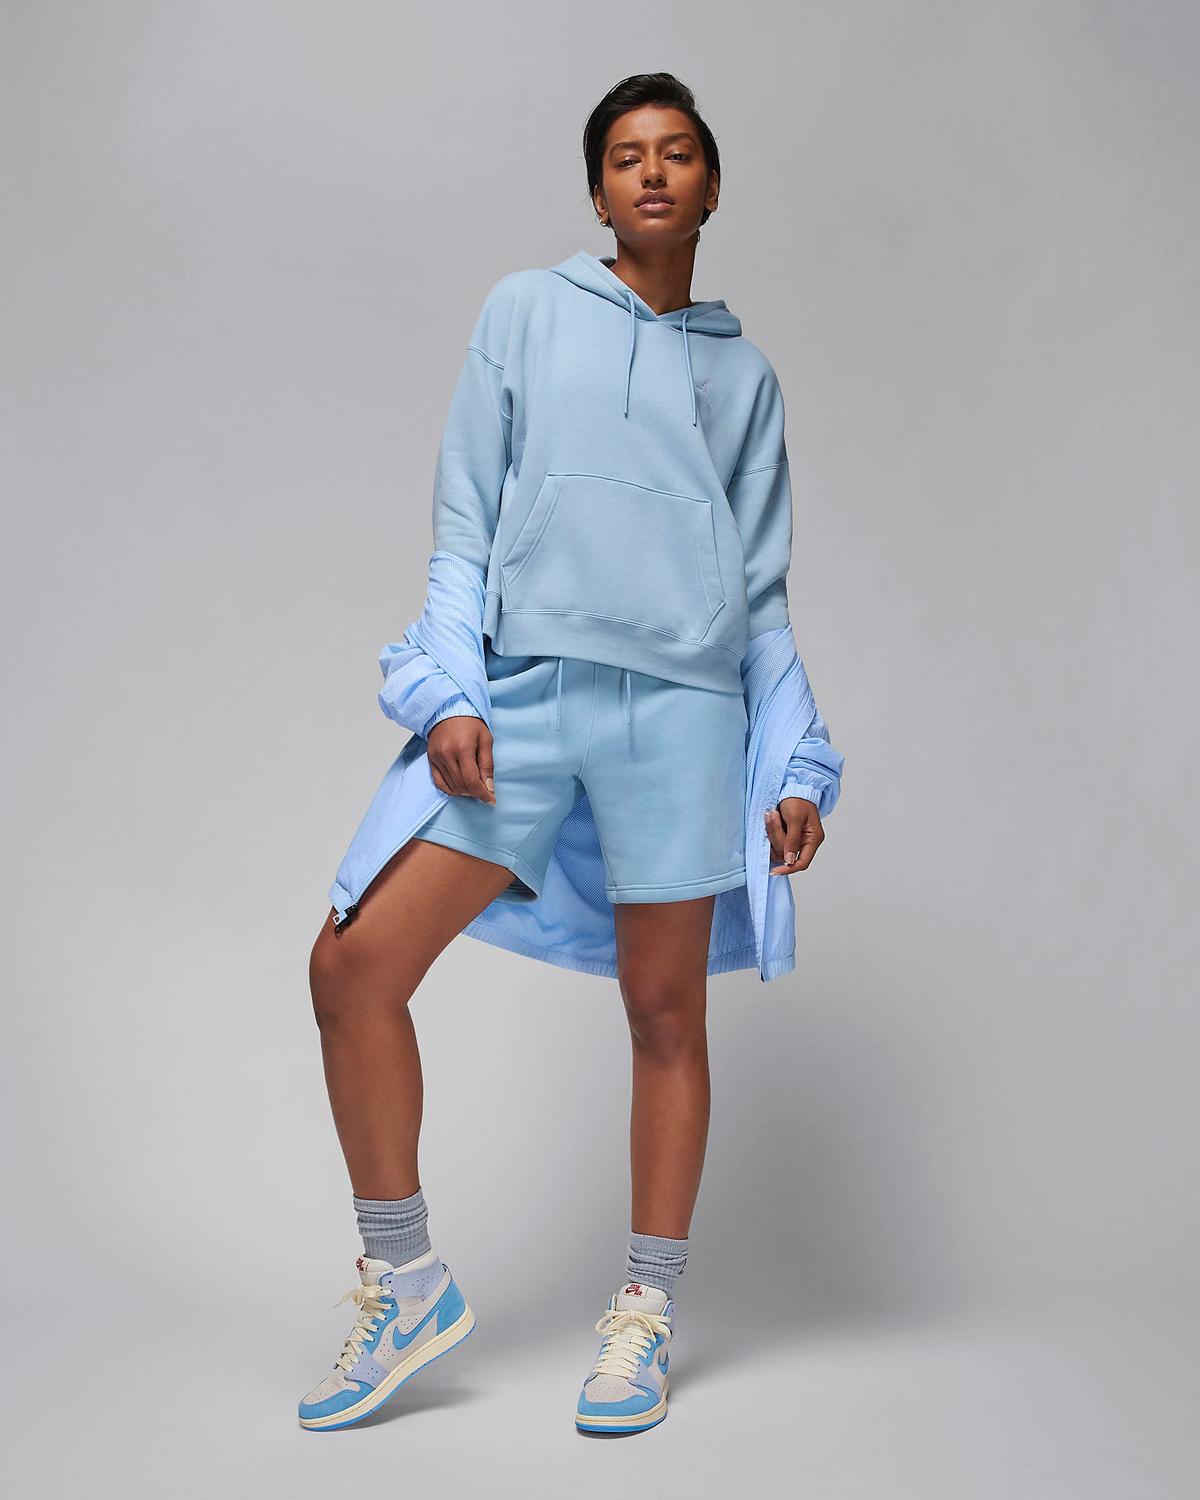 Jordan-Brooklyn-Womens-Hoodie-Blue-Grey-Sneaker-Outfit